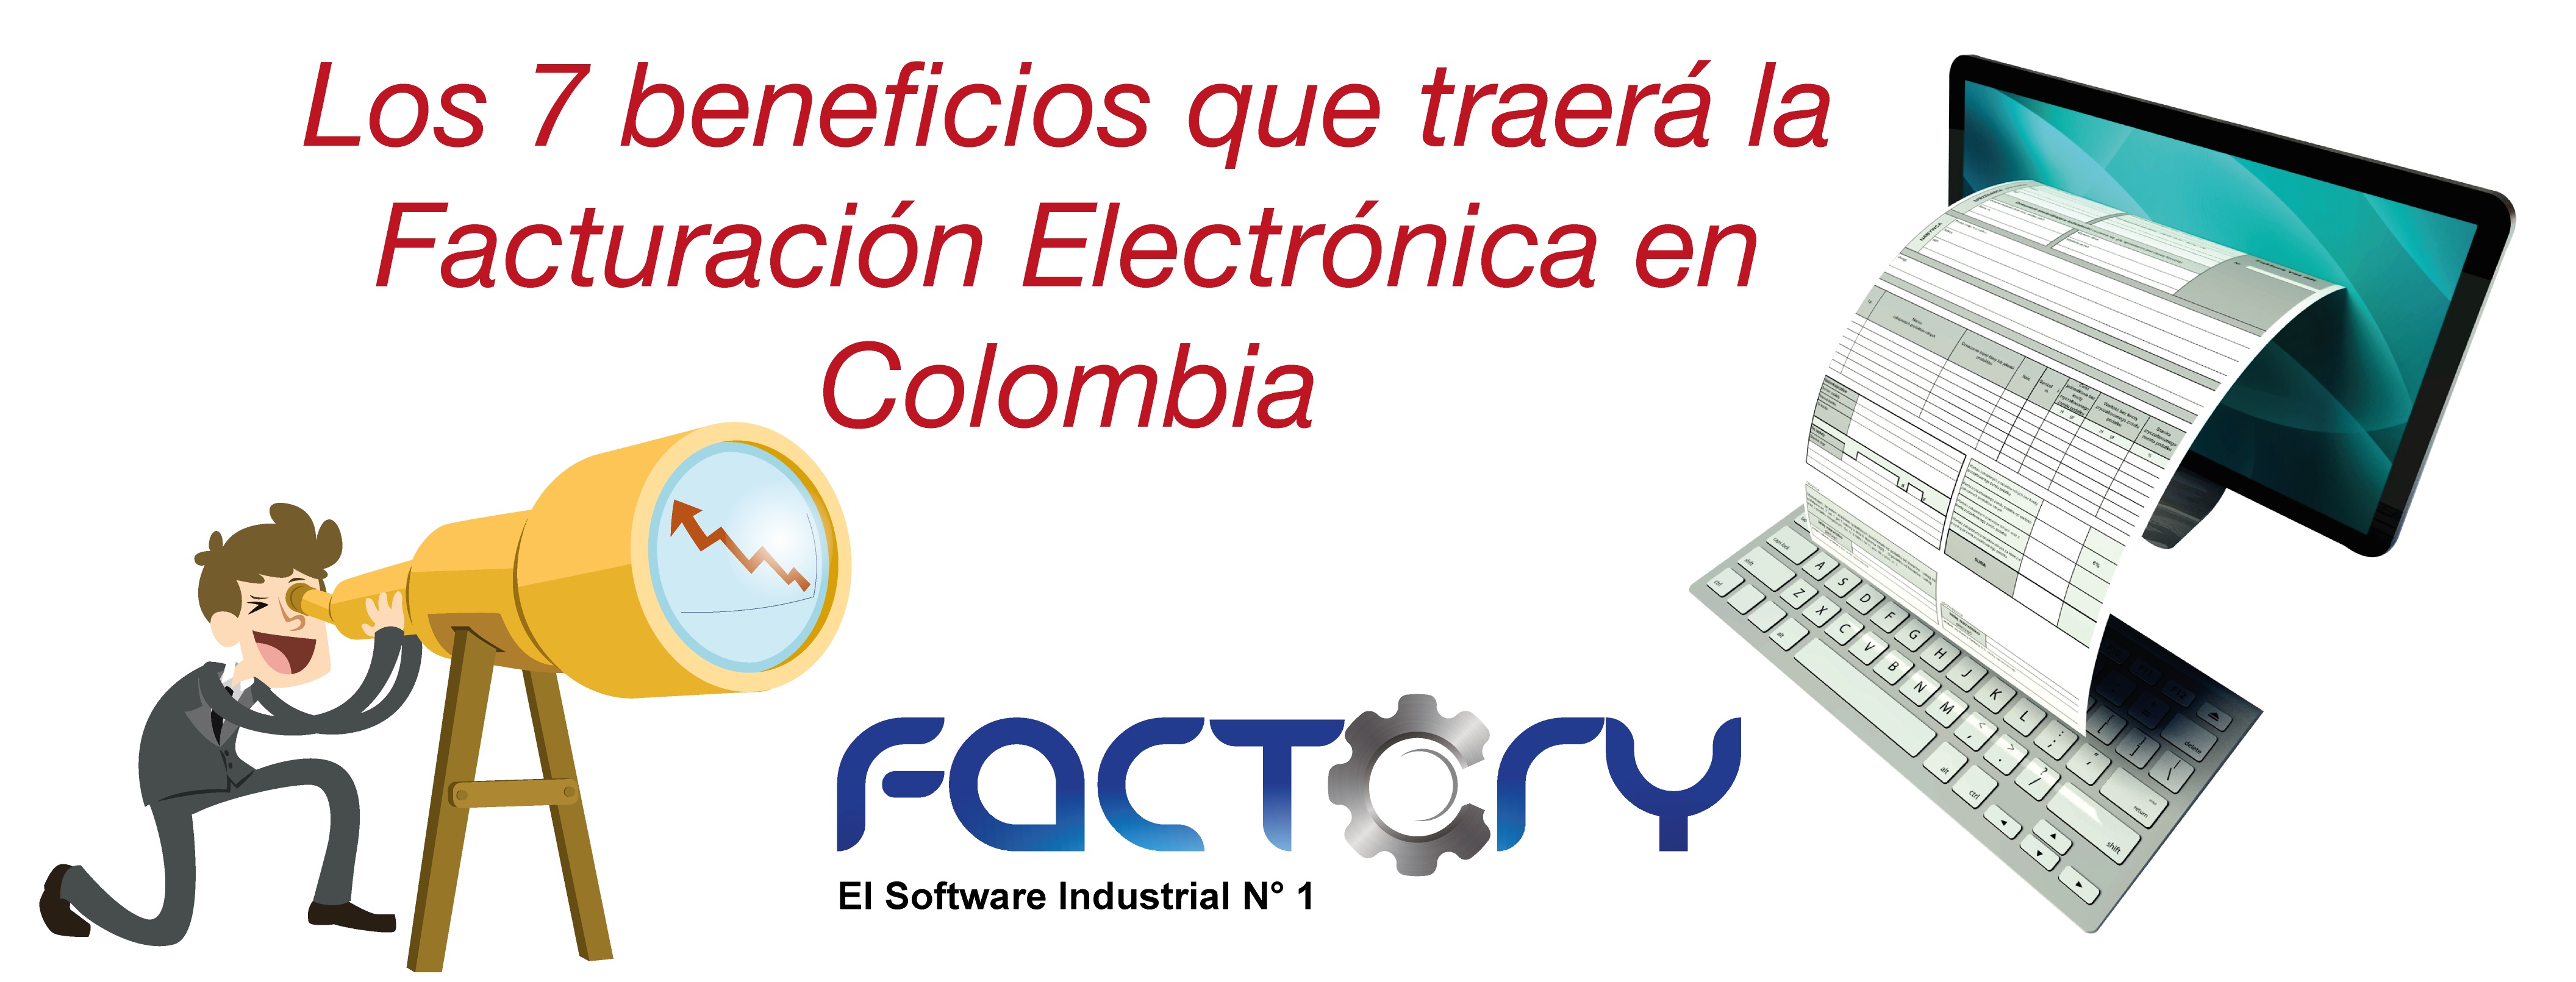 Los-7-beneficios-que-traerá-la-Facturación-Electrónica-en-Colombia